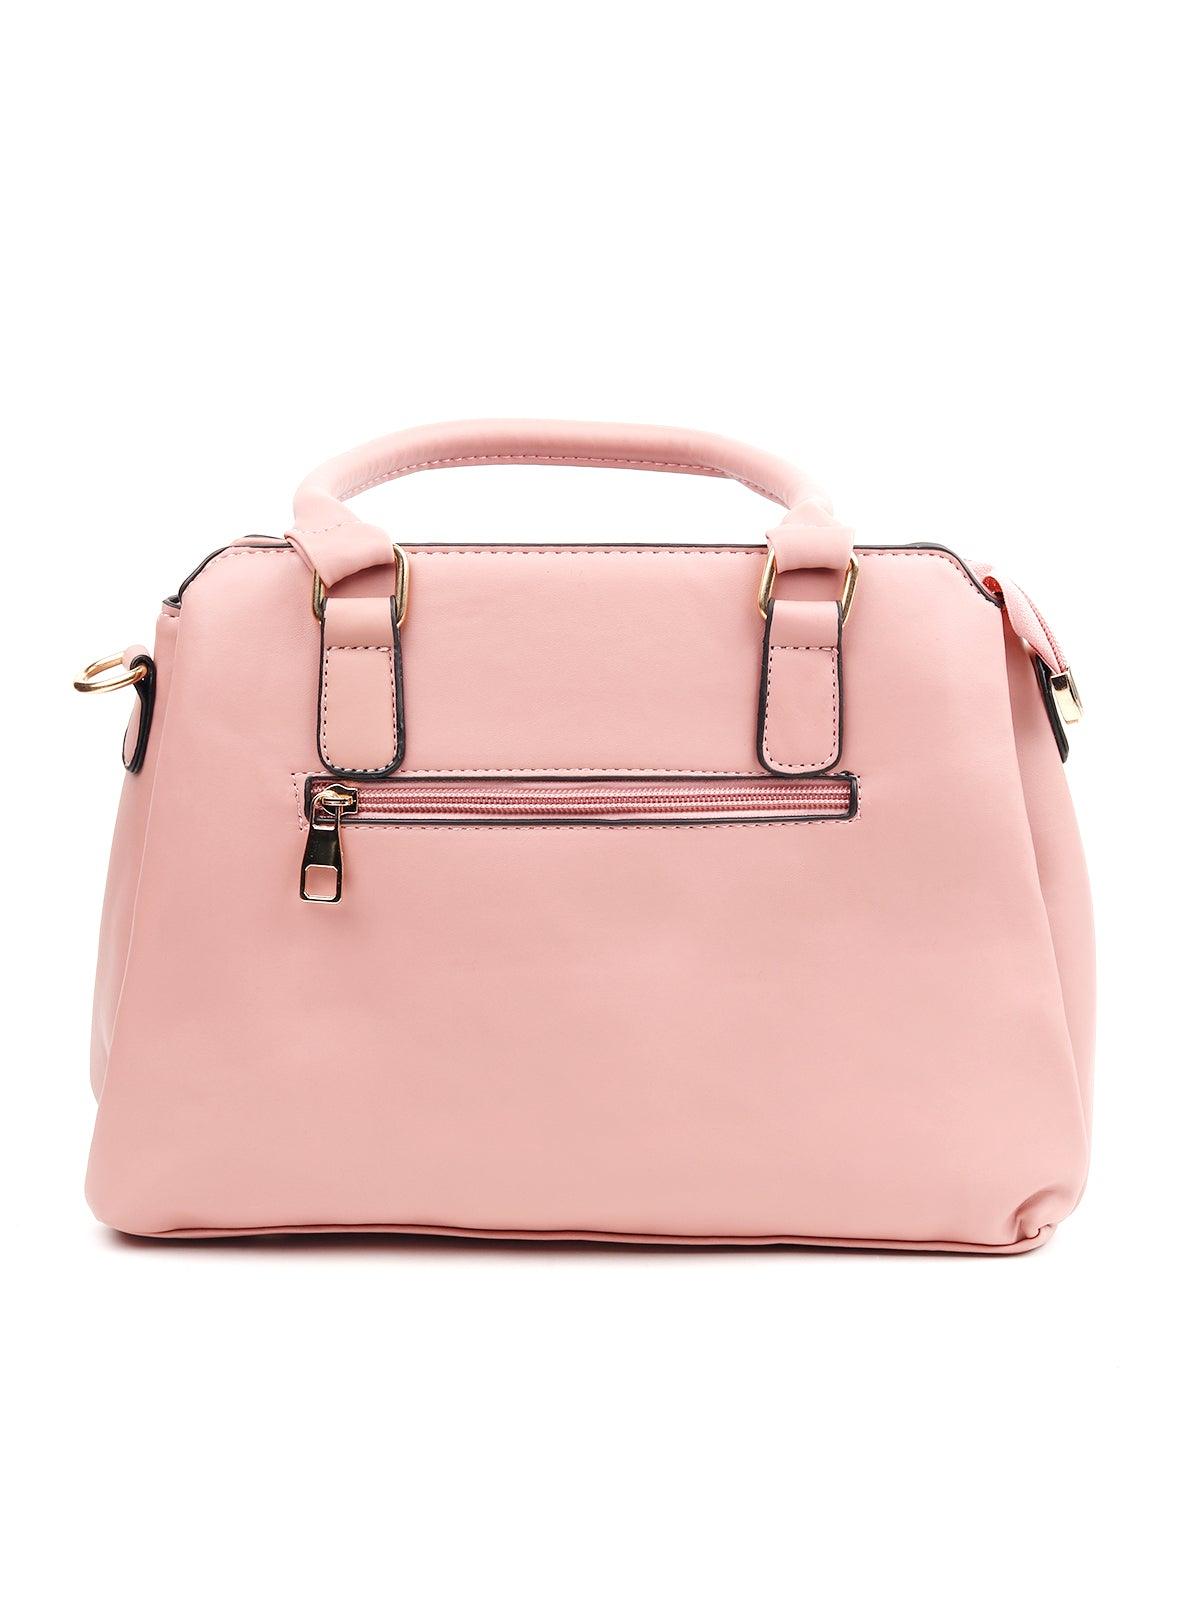 Baby Pink Coloured Sequences Handbag. - Odette